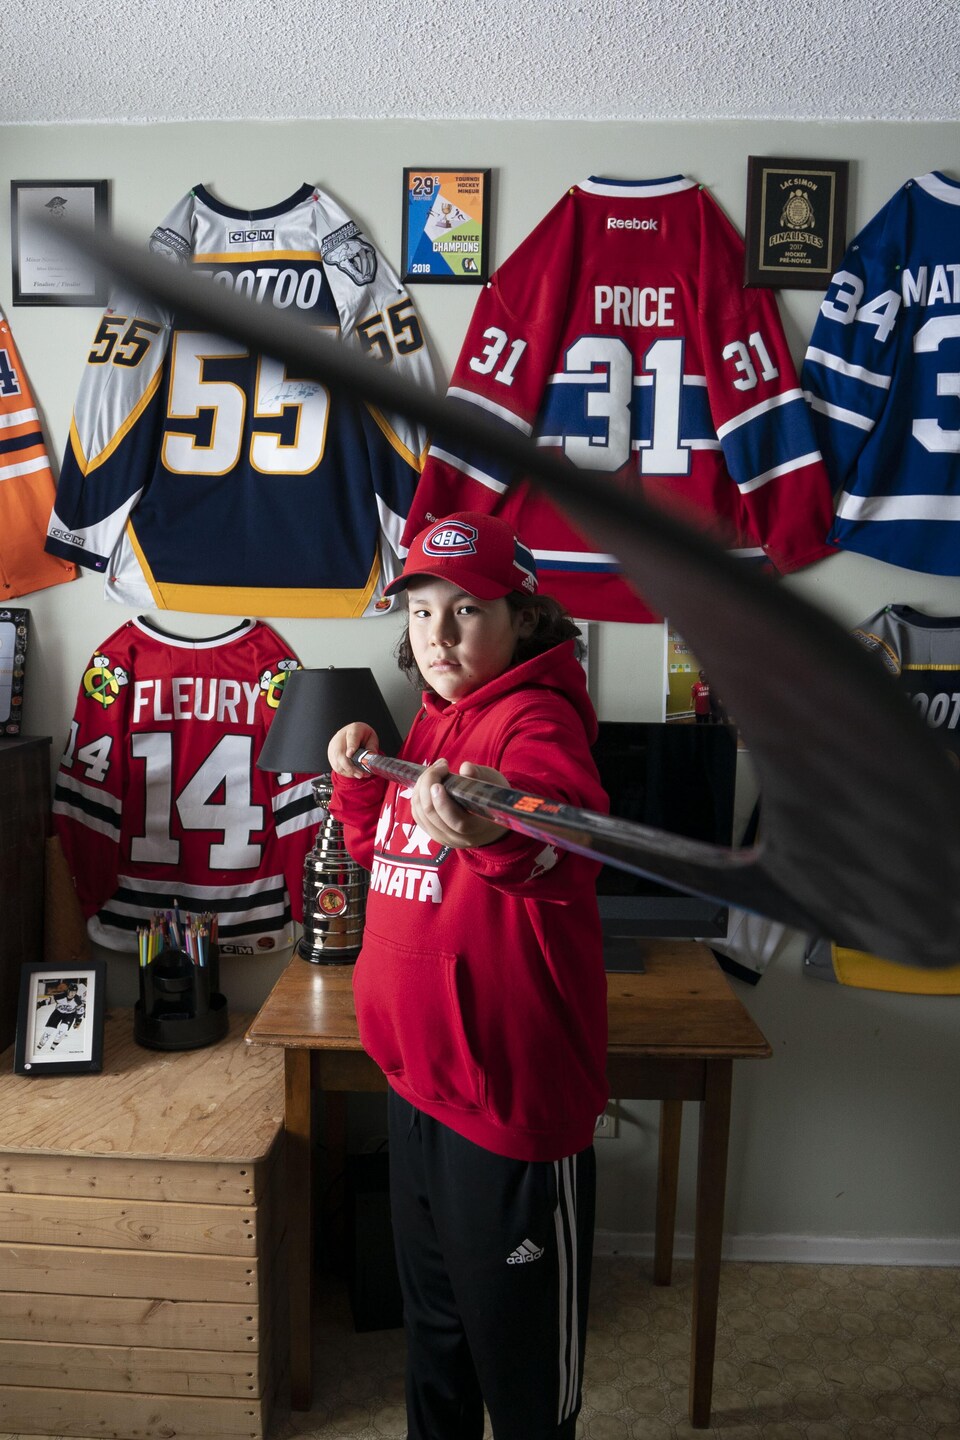 Un enfant dans sa chambre décorée de plusieurs chandails de hockey.